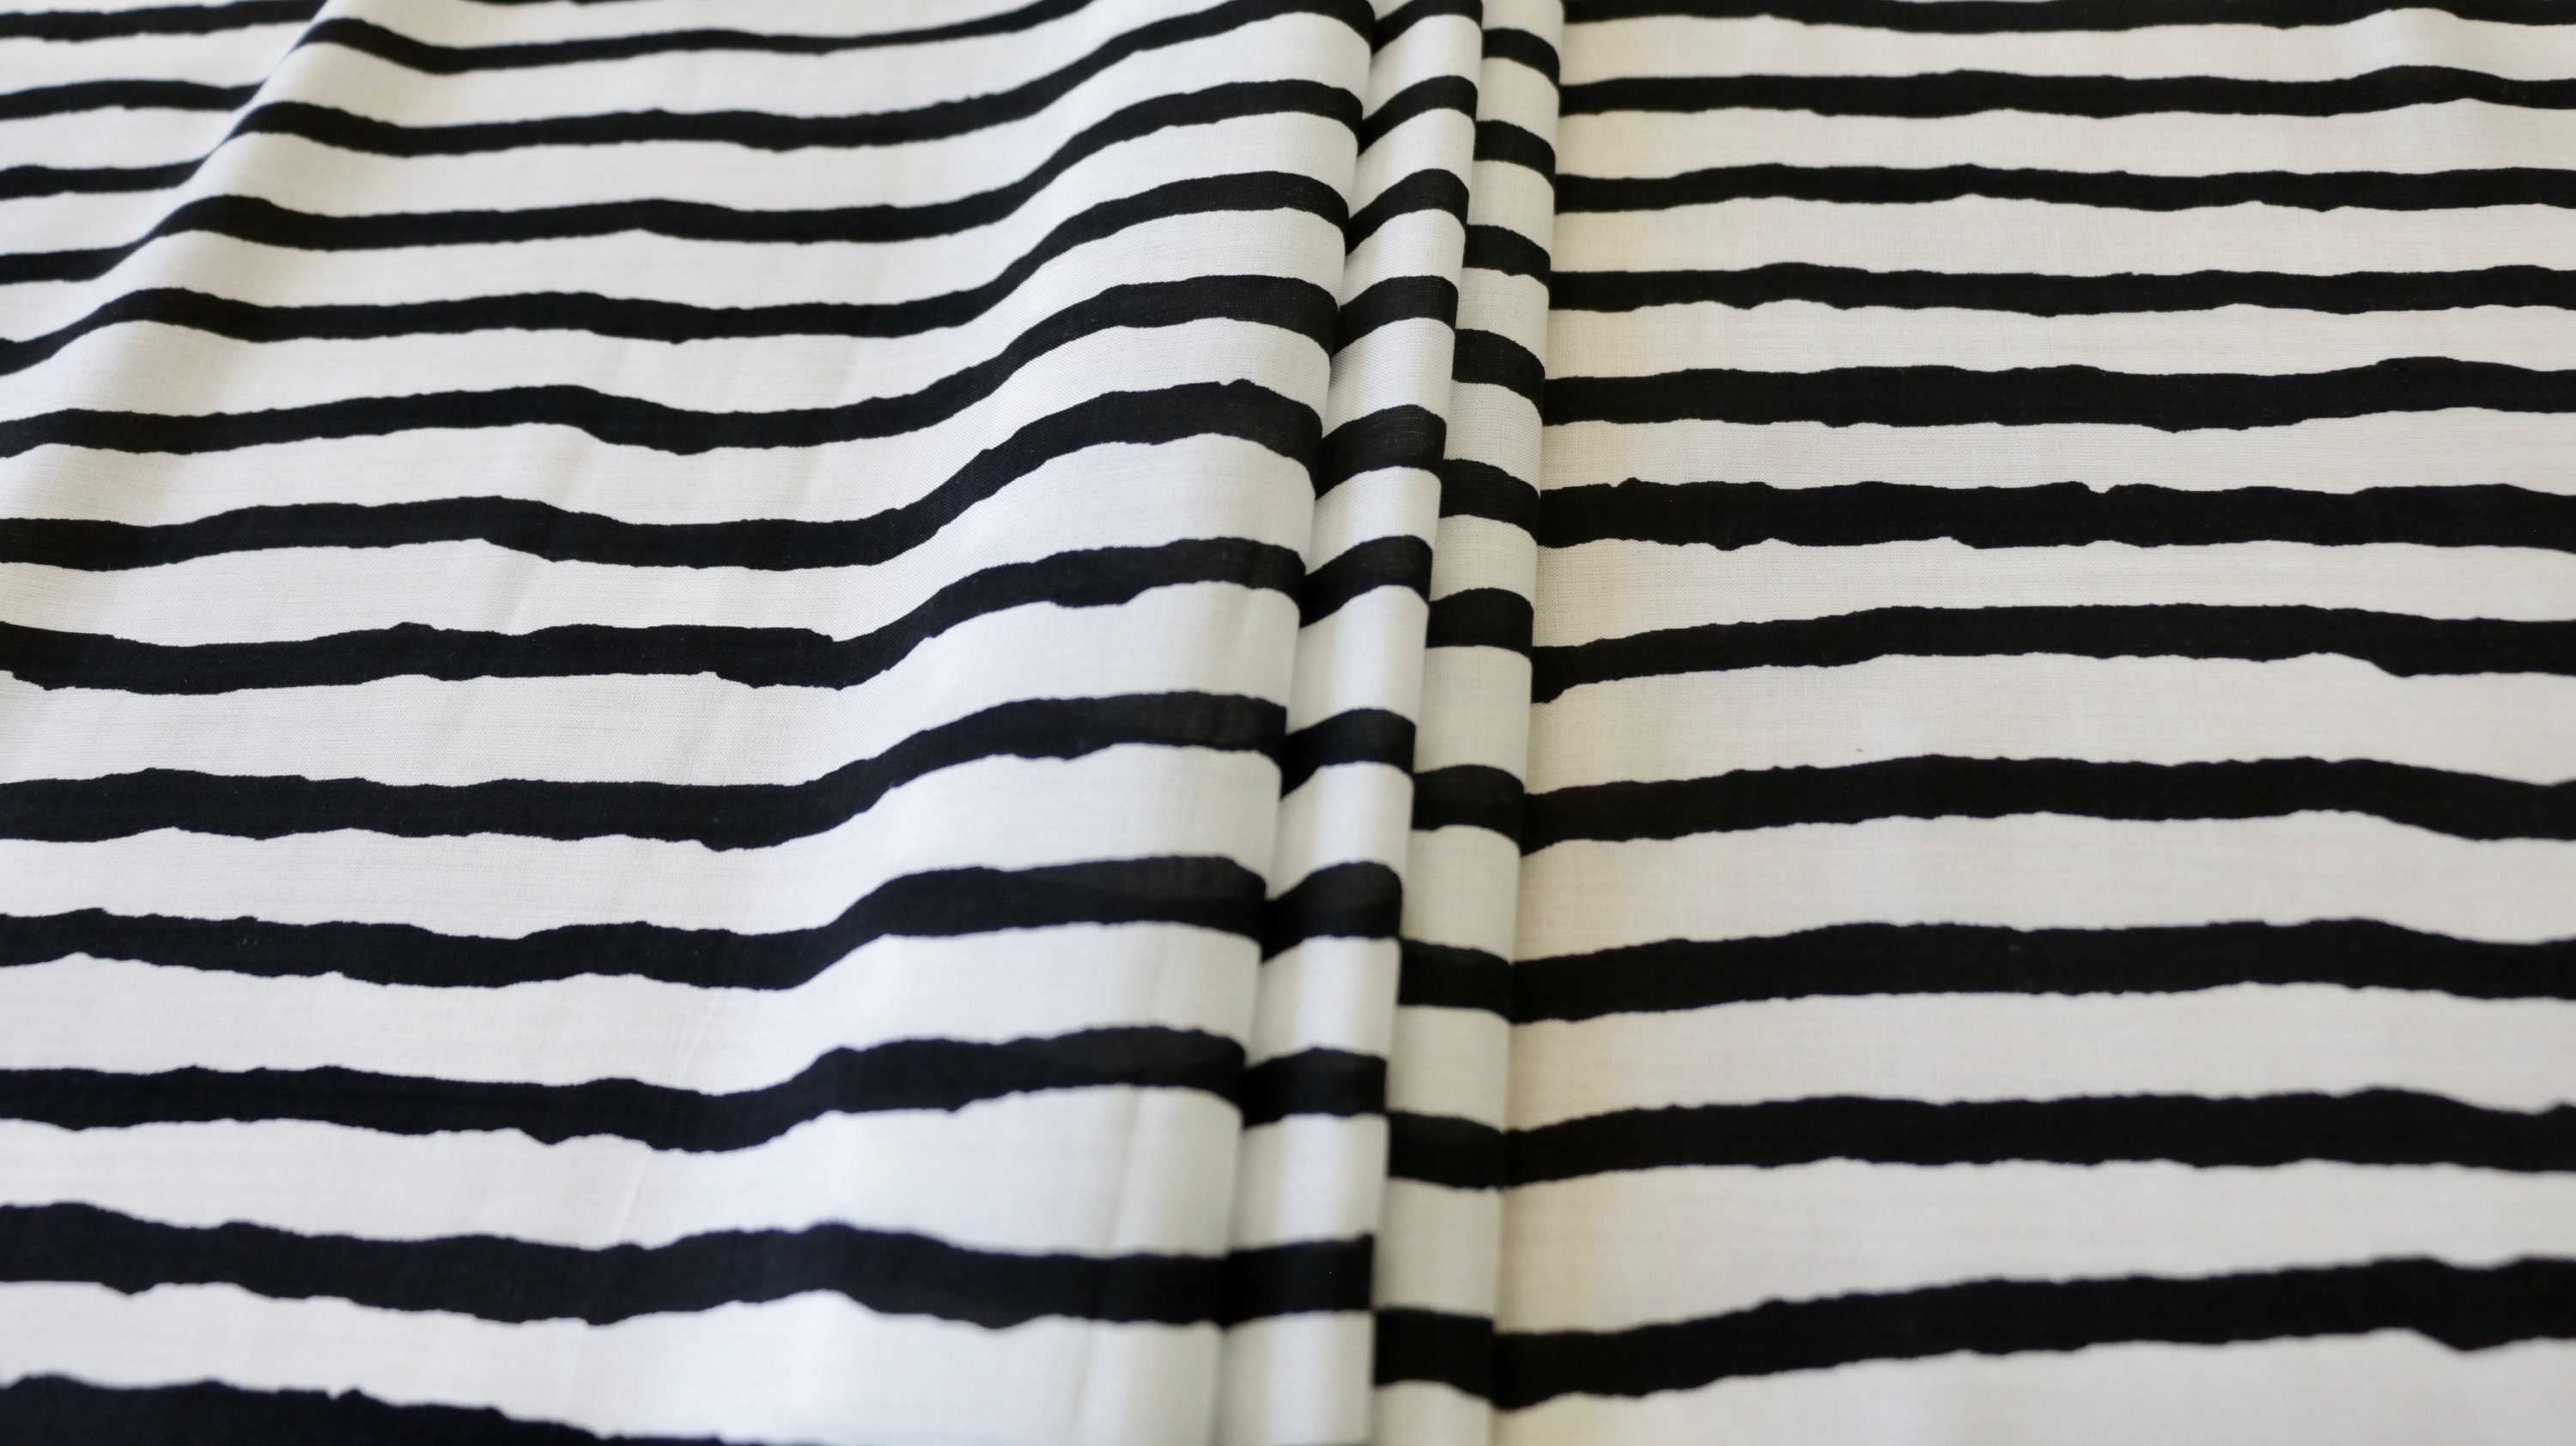 VISCOSE LAWN FABRIC Stripe Design Black & off white | Etsy